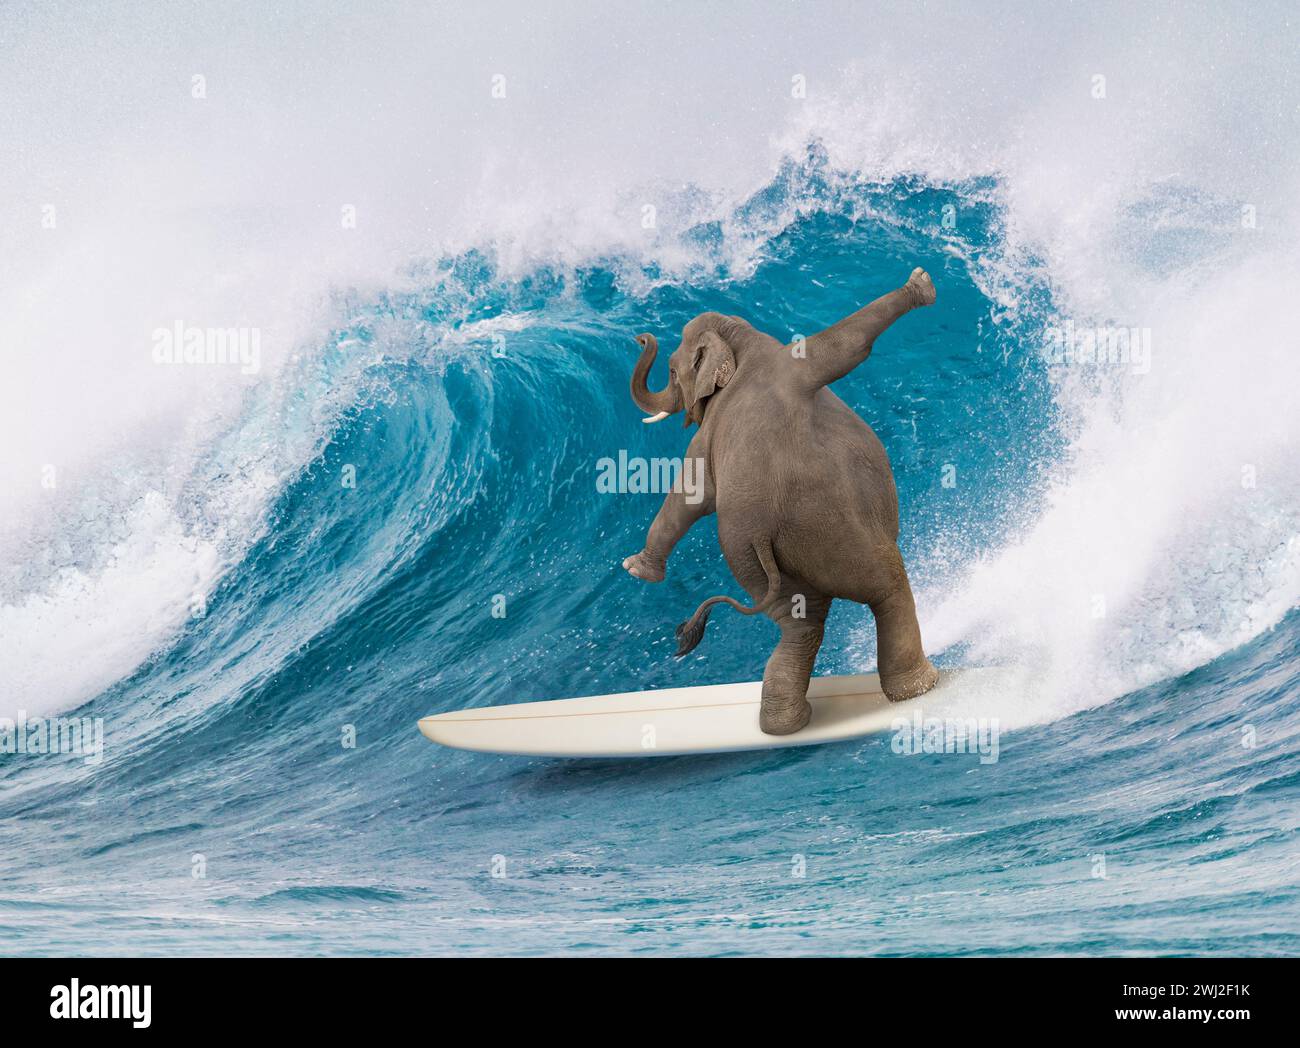 Un éléphant monte une planche de surf dans une image sur la taille, la compétence et le. inattendu. Banque D'Images